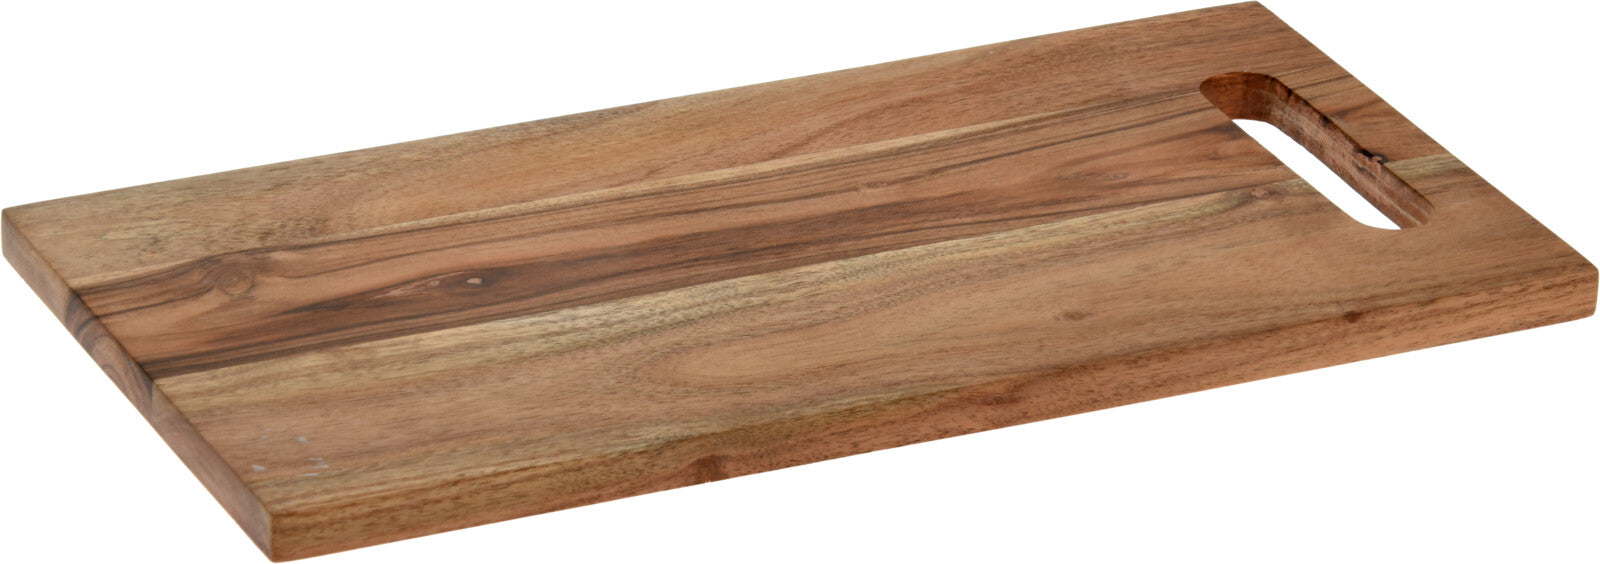 Cutting/Chopping Board - Wood